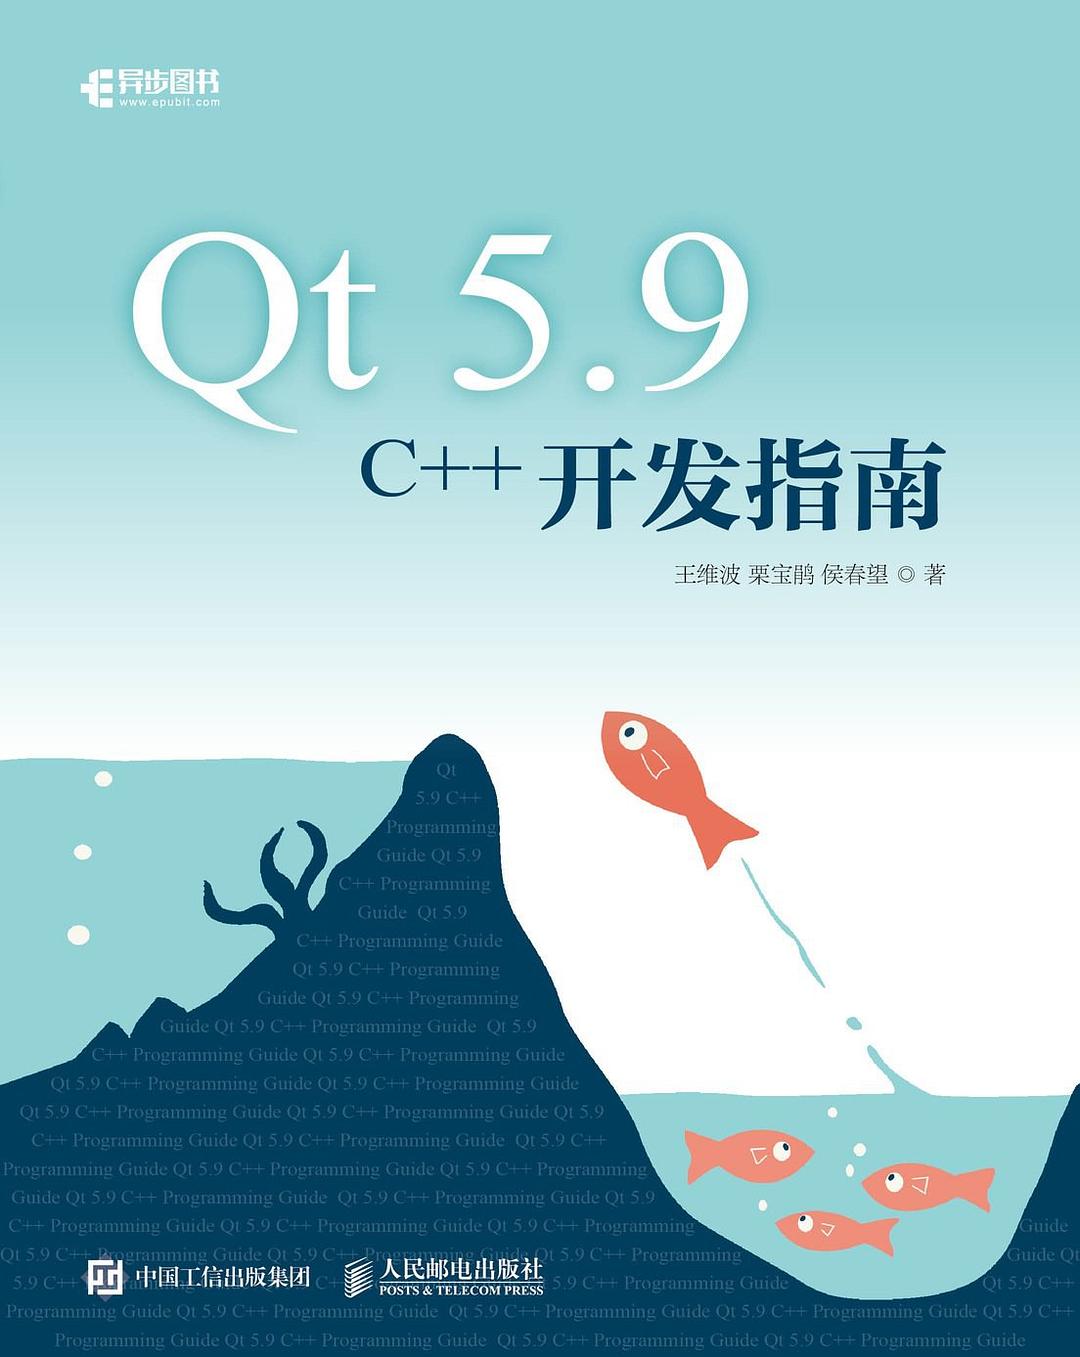 Qt 5.9 C++开发指南-好书天下